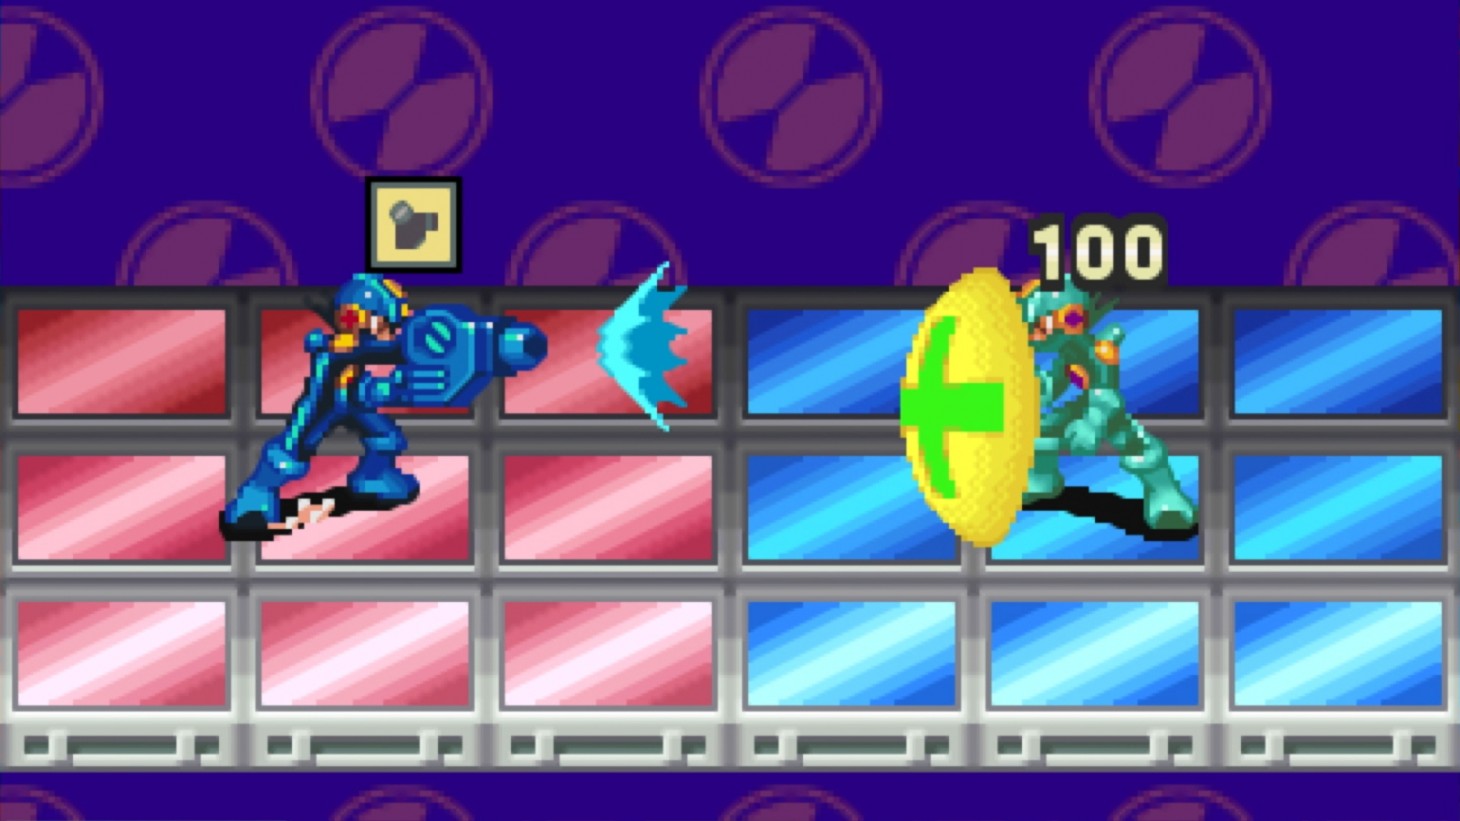 Steigen Sie diesen April in die Legacy-Sammlung des Mega Man Battle Network ein